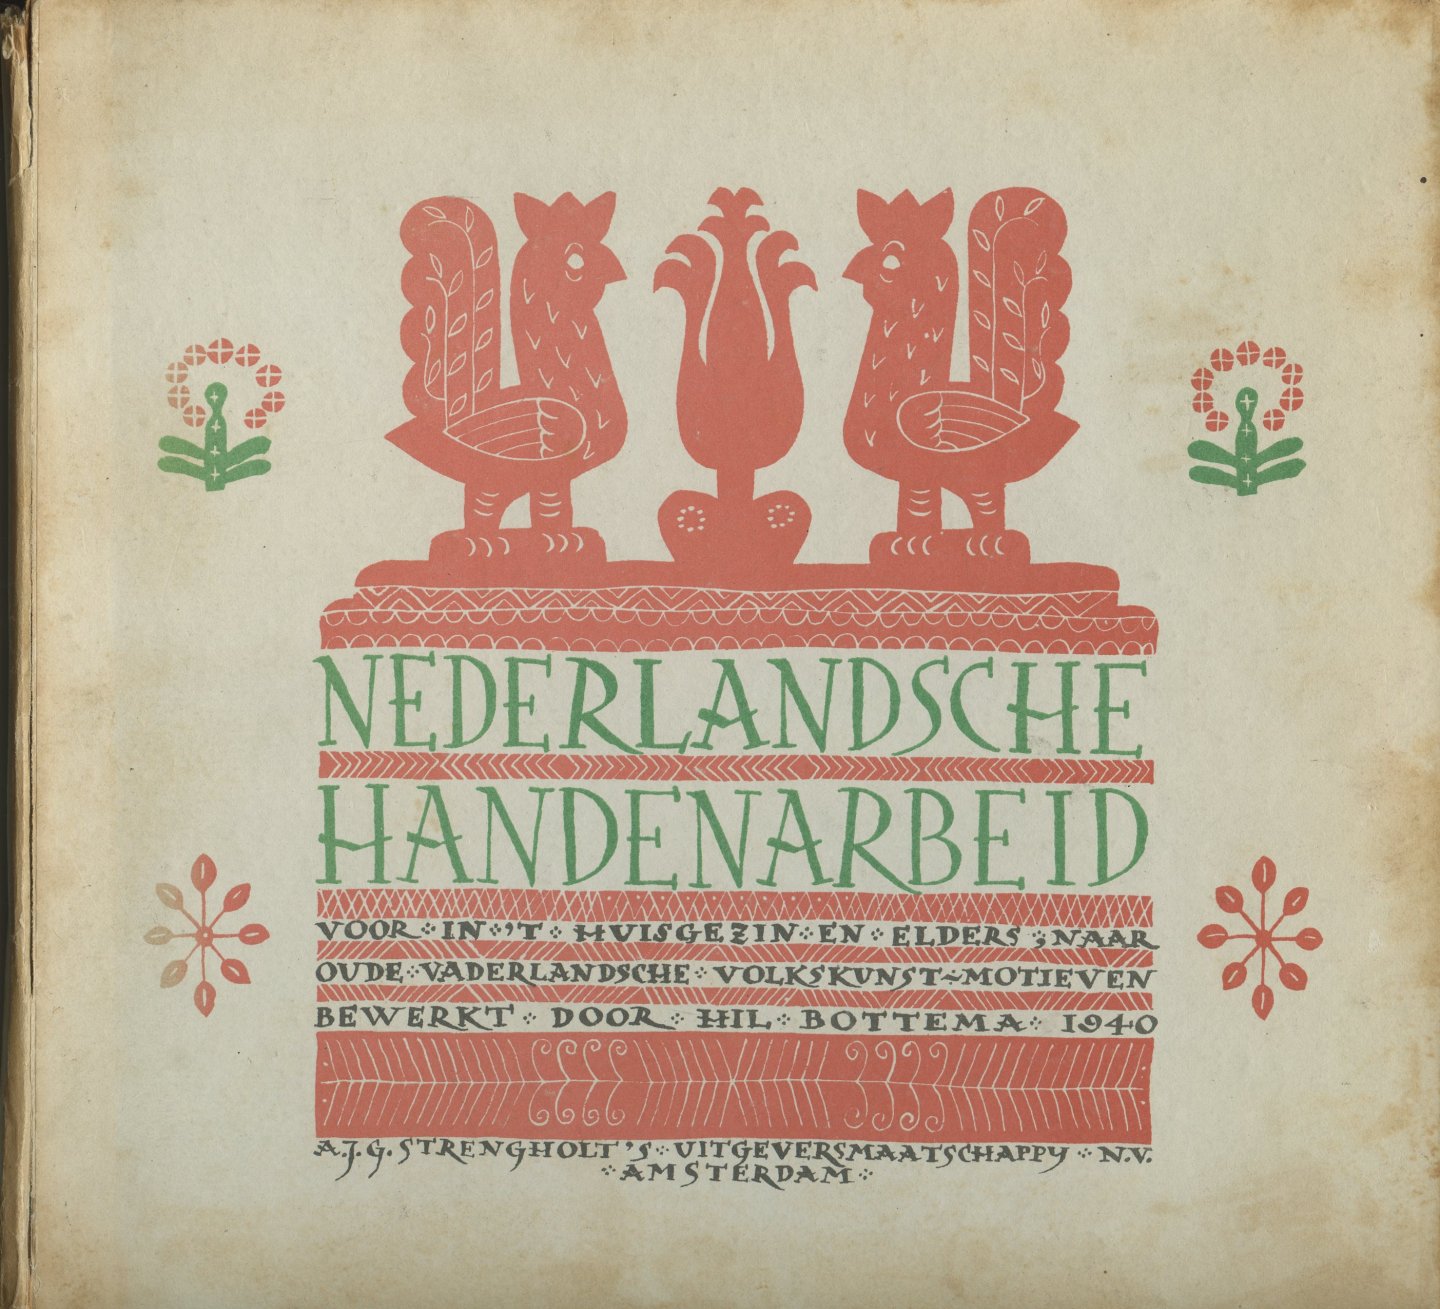 Bottema, Hil (bewerking) - Nederlandsche Handenarbeid. Voor in het huisgezin en elders, naar oude vaderlandsche volkskunst-motieven